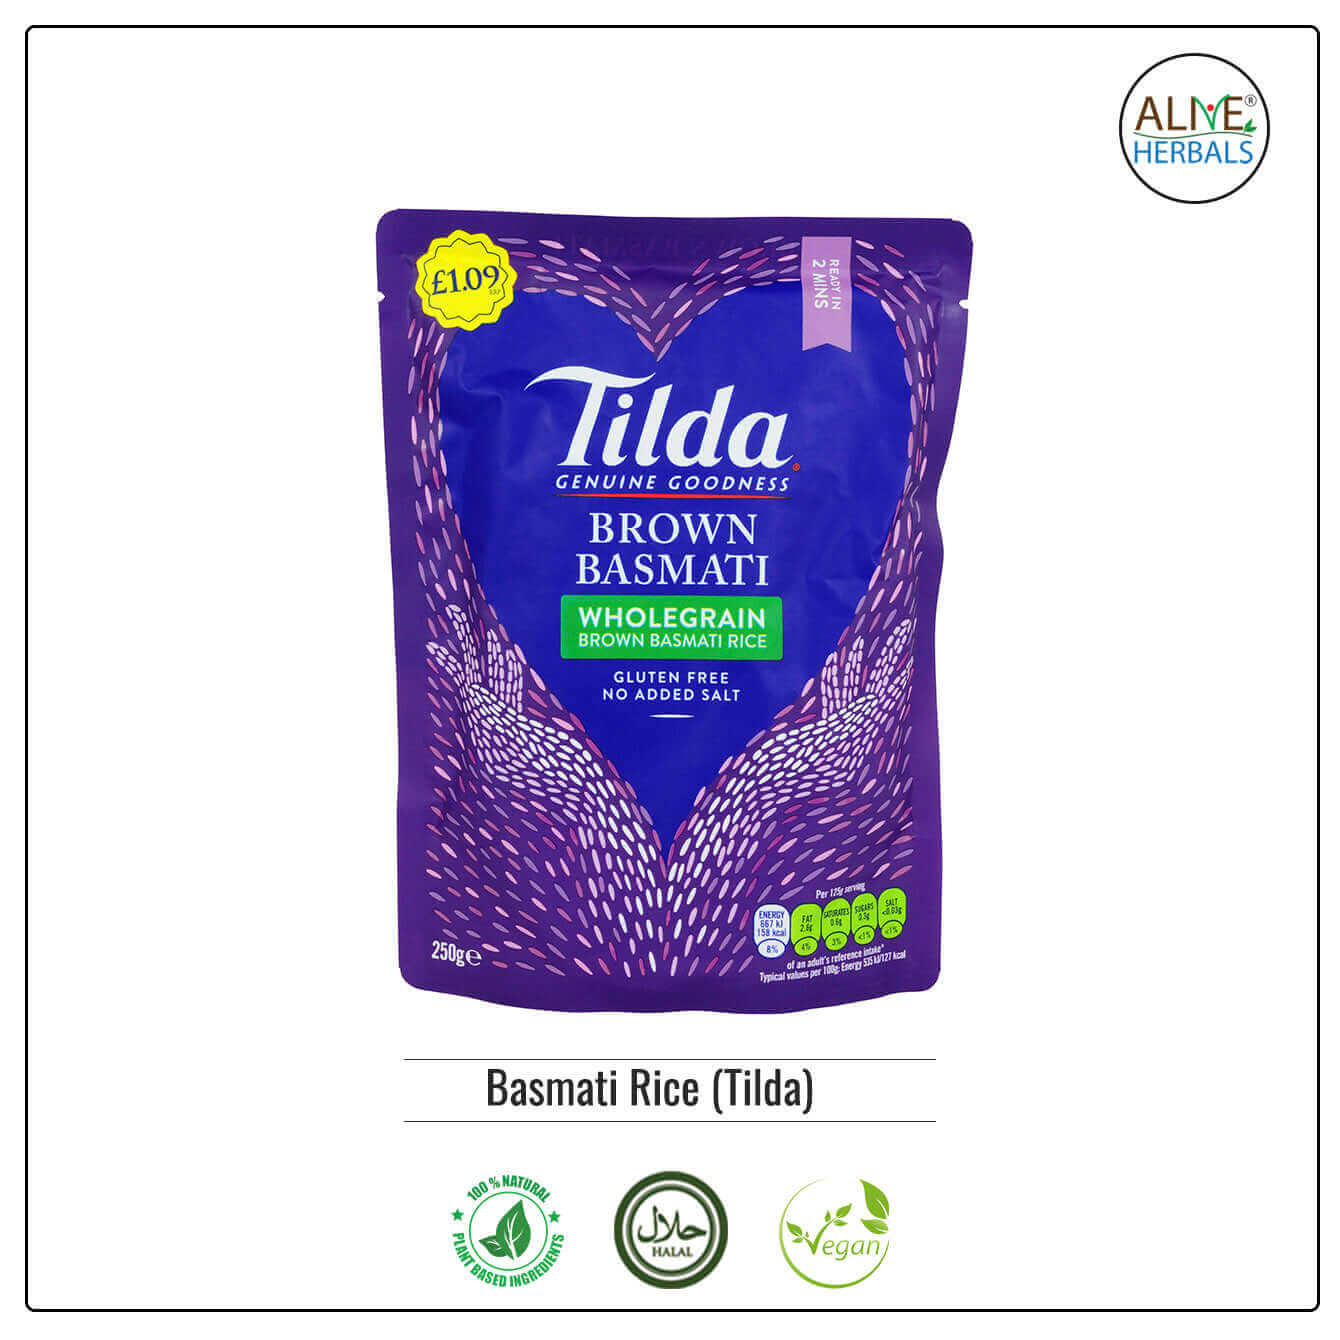 Tilda Basmati Rice - Shop at Natural Food Store | Alive Herbals.